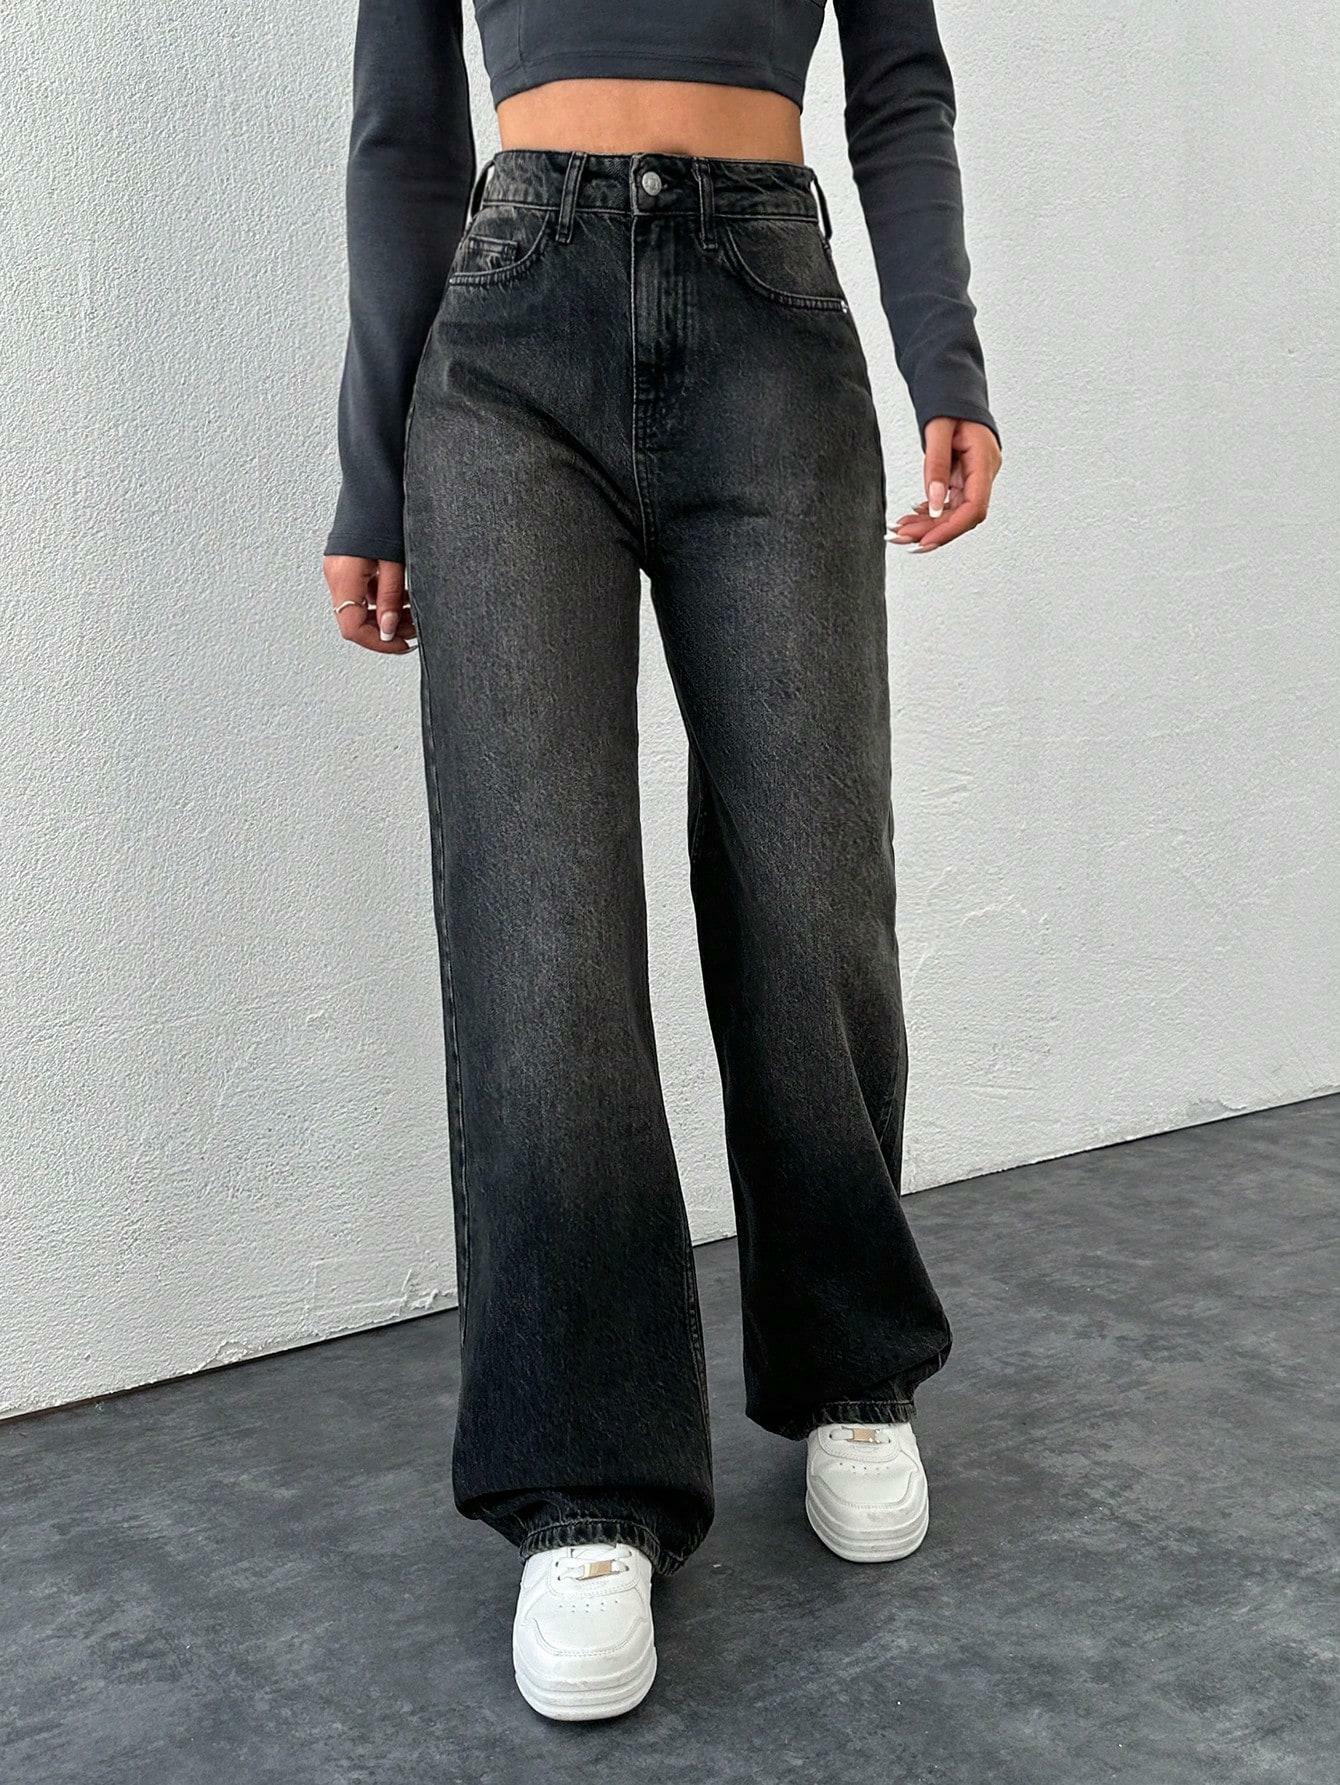 spodnie z wysokim stanem jeans szeroka nogawka kieszenie